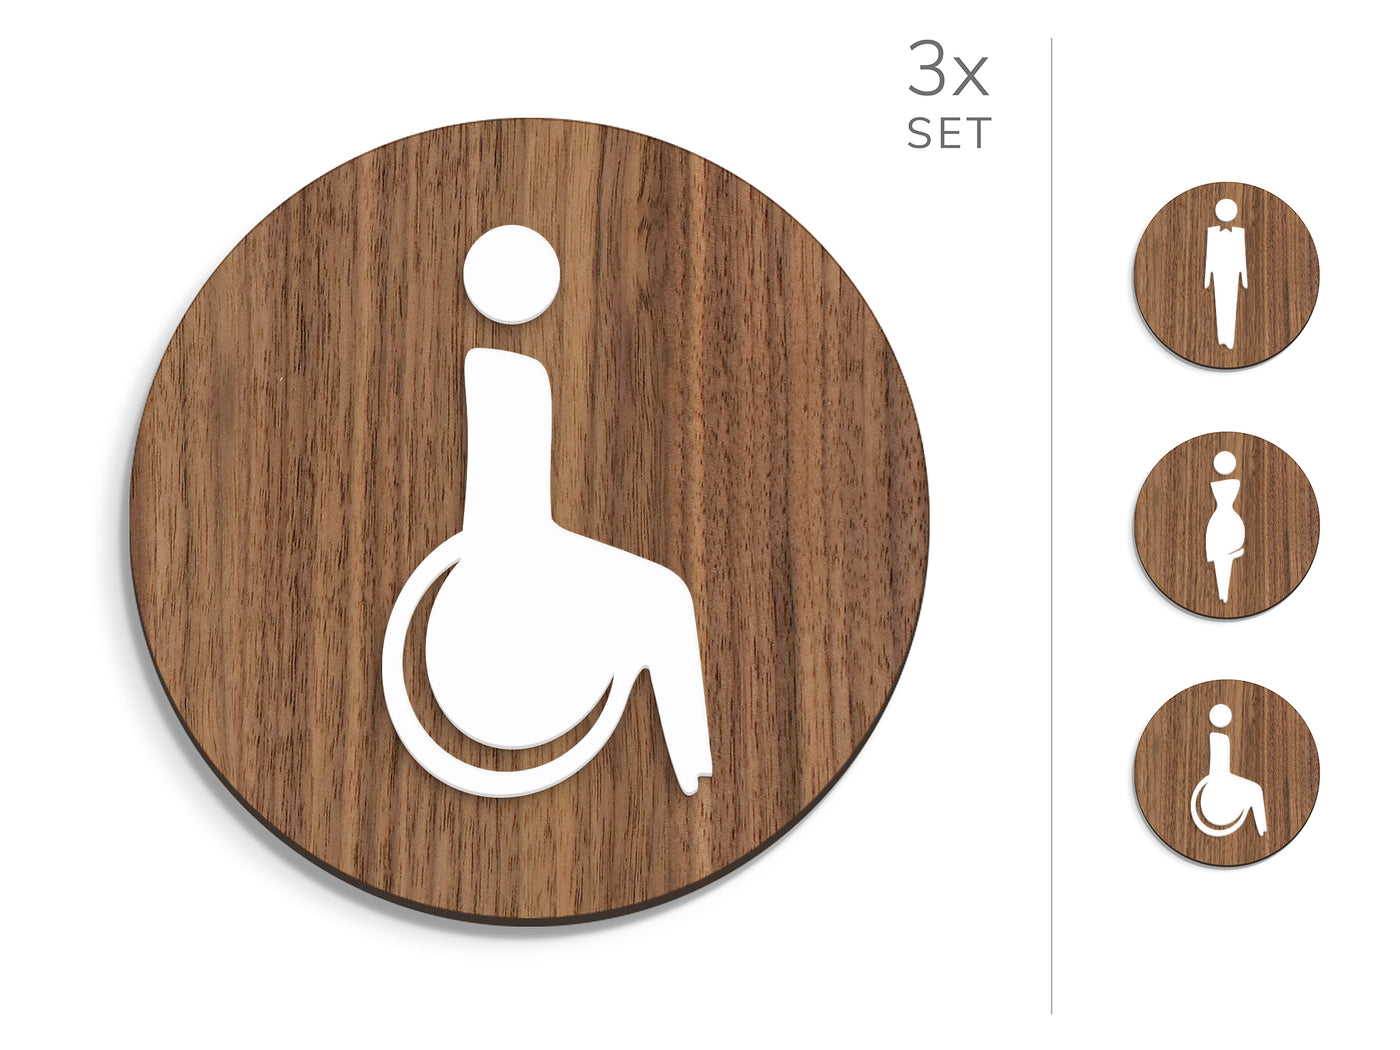 Elegant, 3x Base Ronde - Jeu Panneau de signalisation toilettes, signalétique sanitaires - Homme, Femme, Handicapé